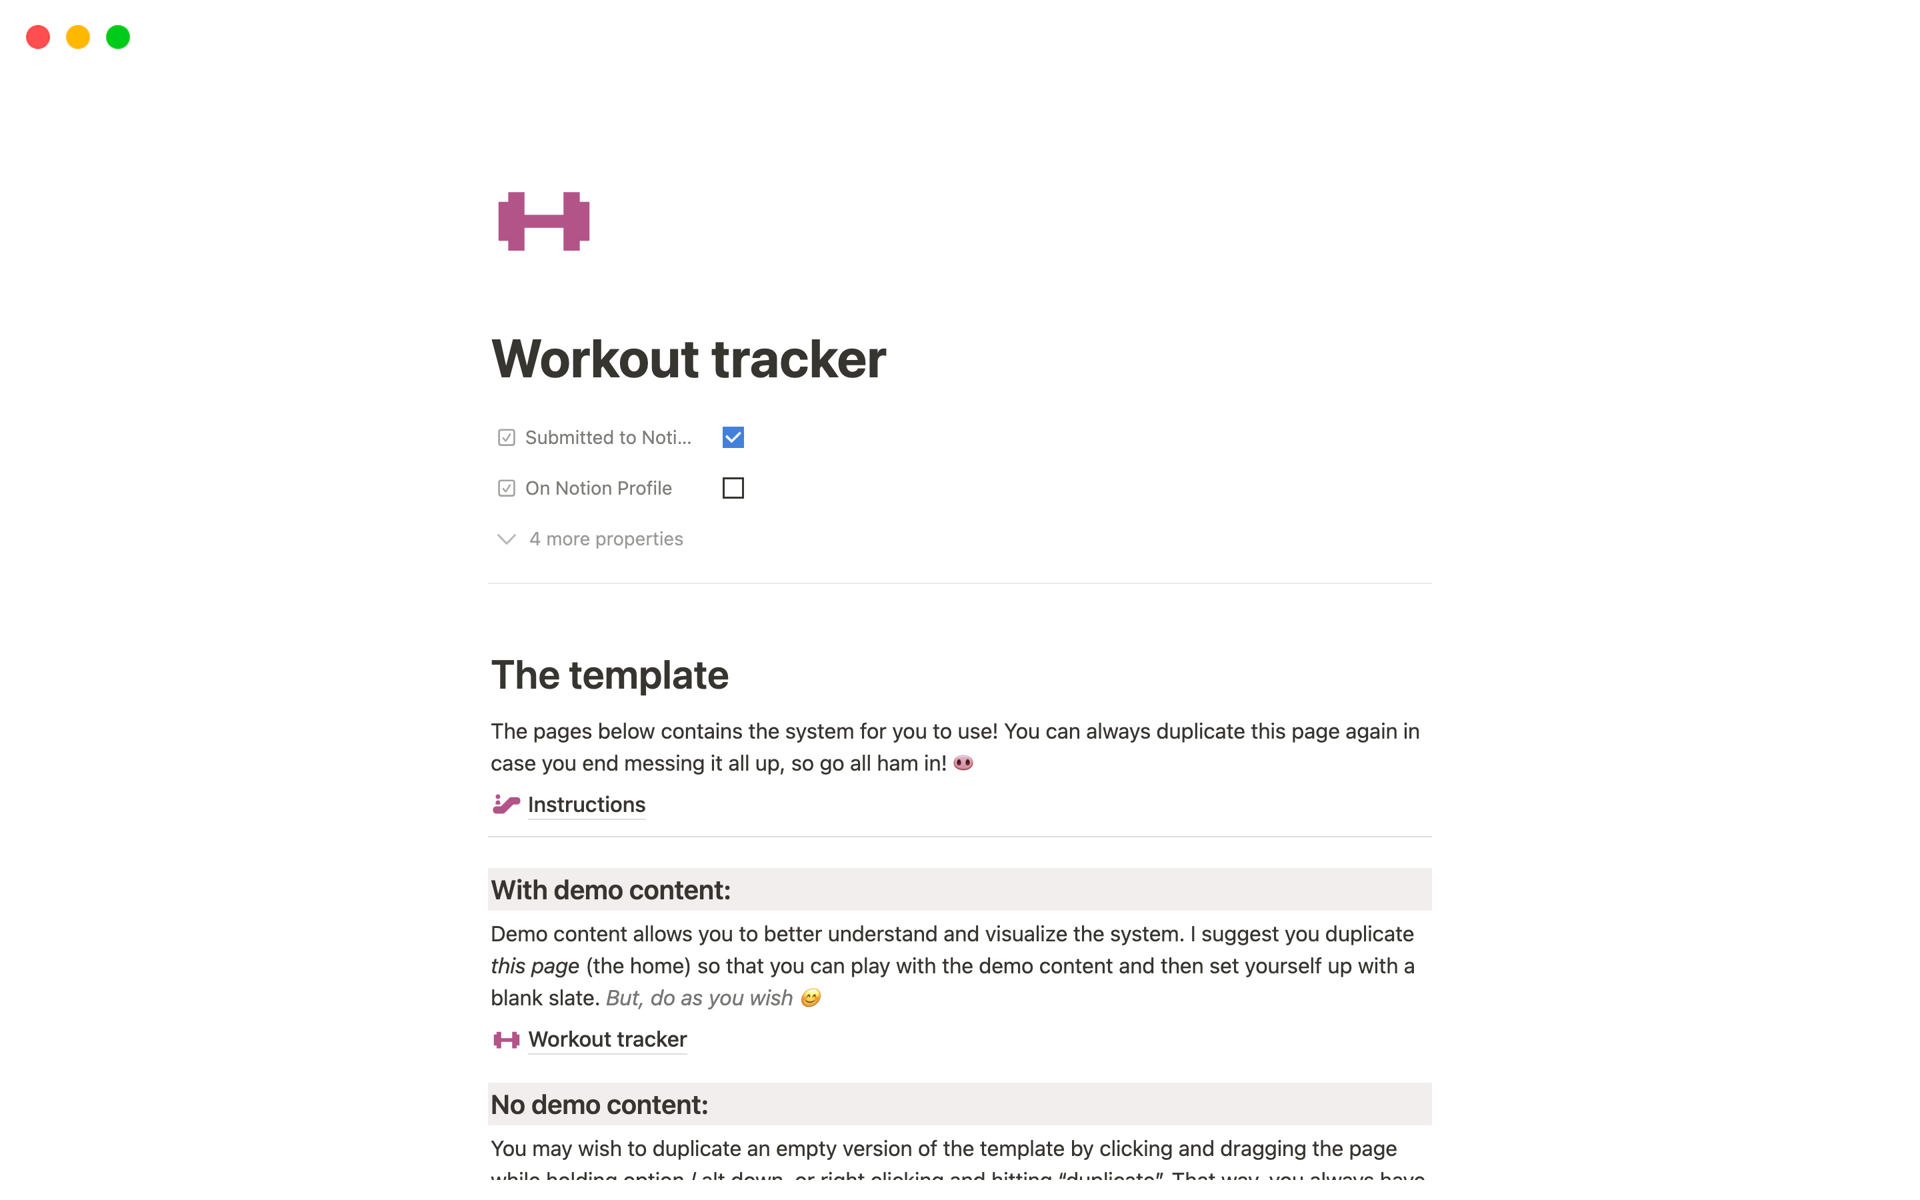 Uma prévia do modelo para Workout tracker